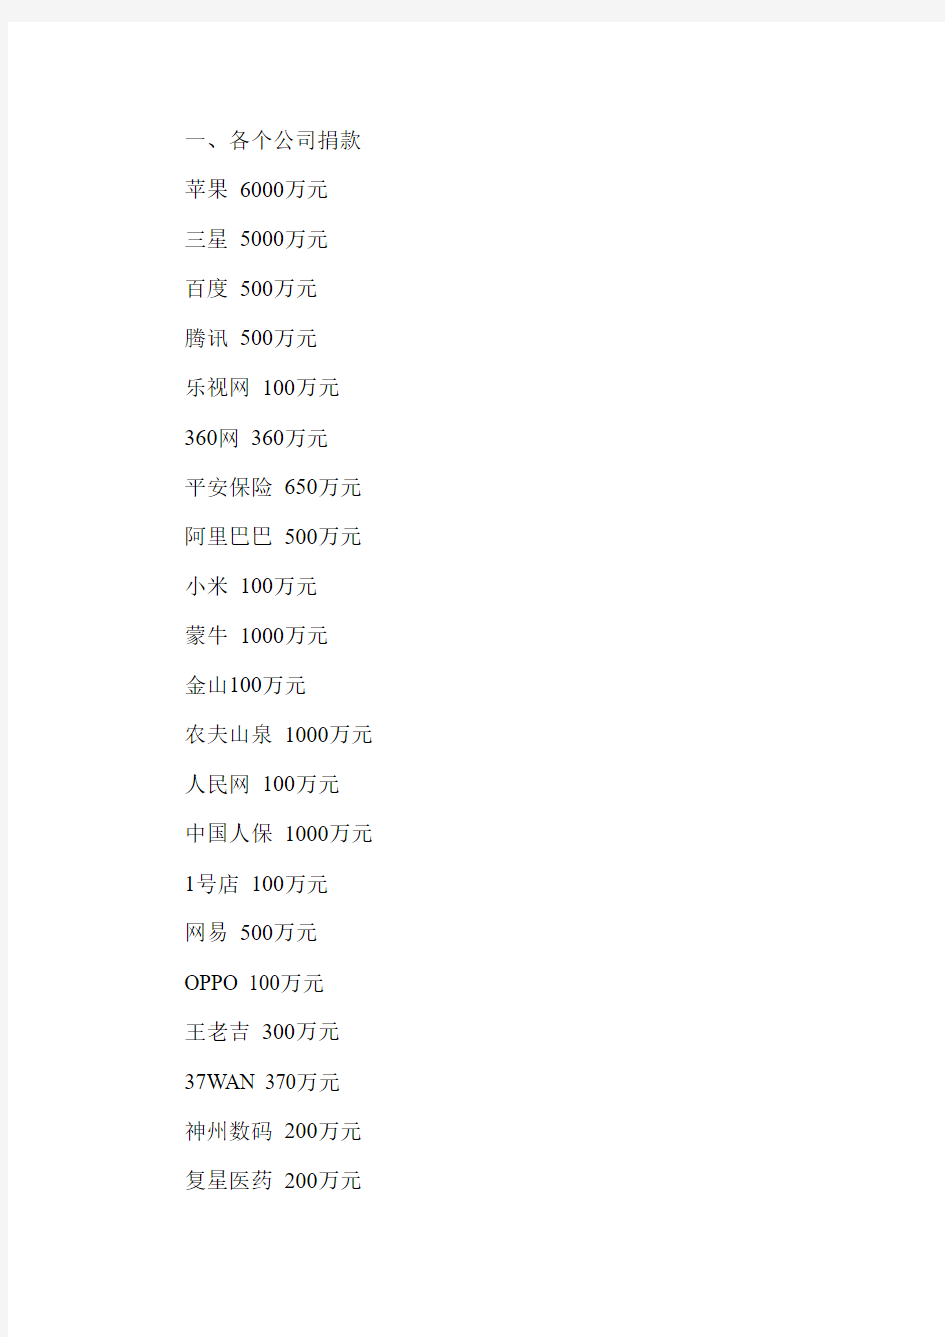 四川雅安地震捐款名单